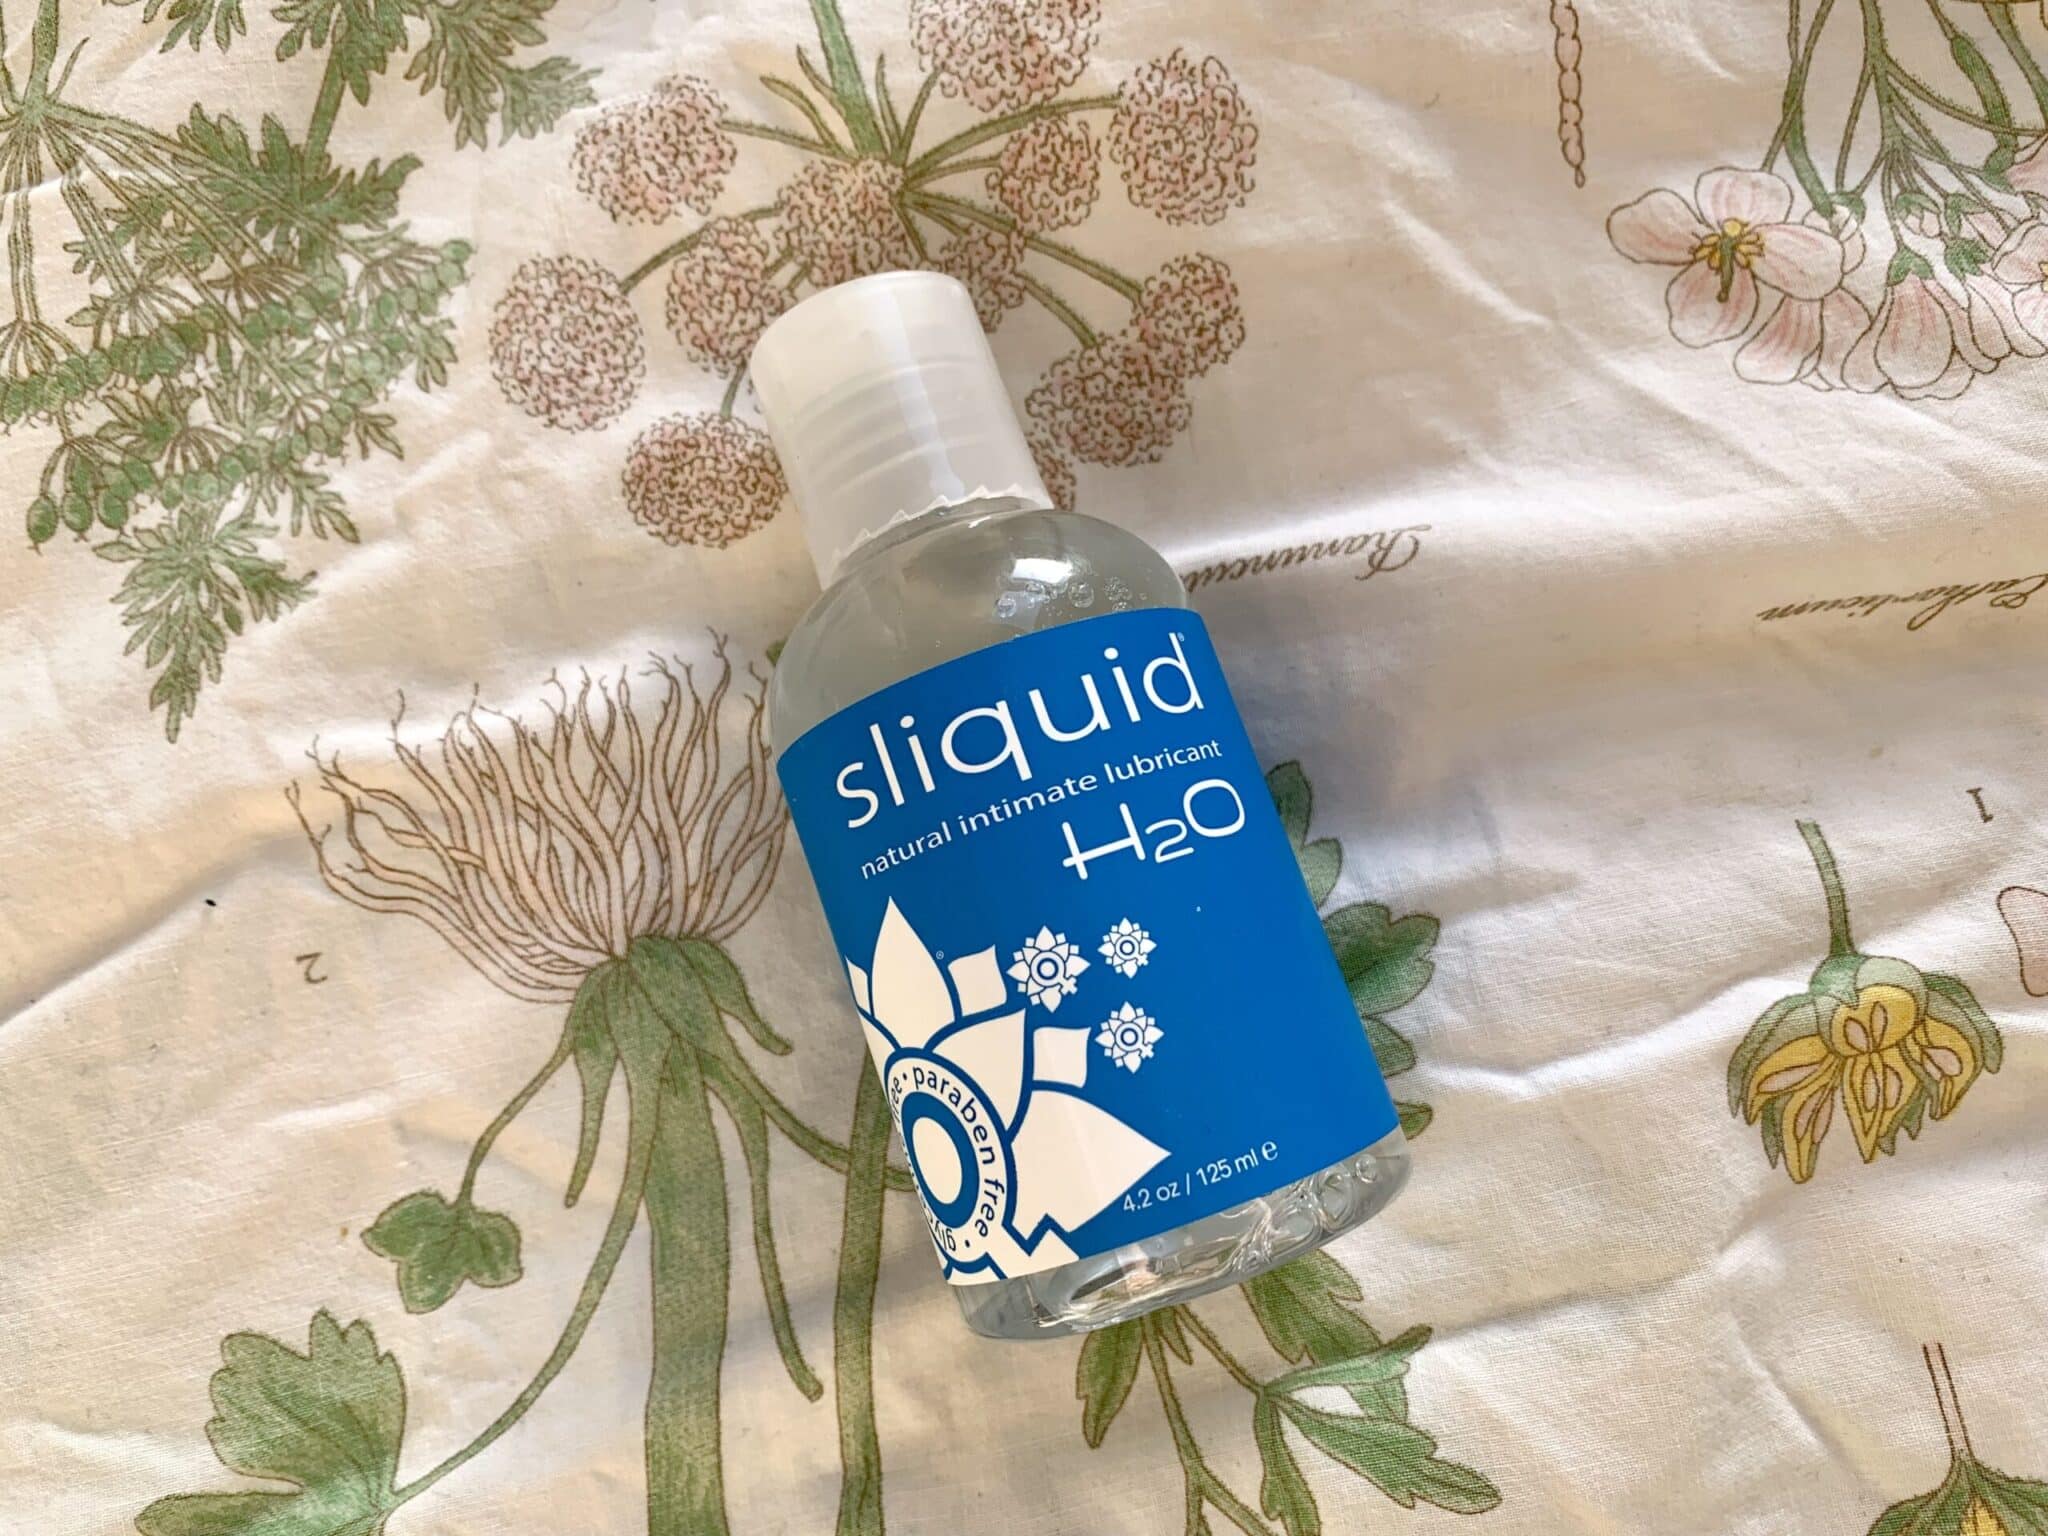 Sliquid H2O Rating the Sliquid H2O’s design